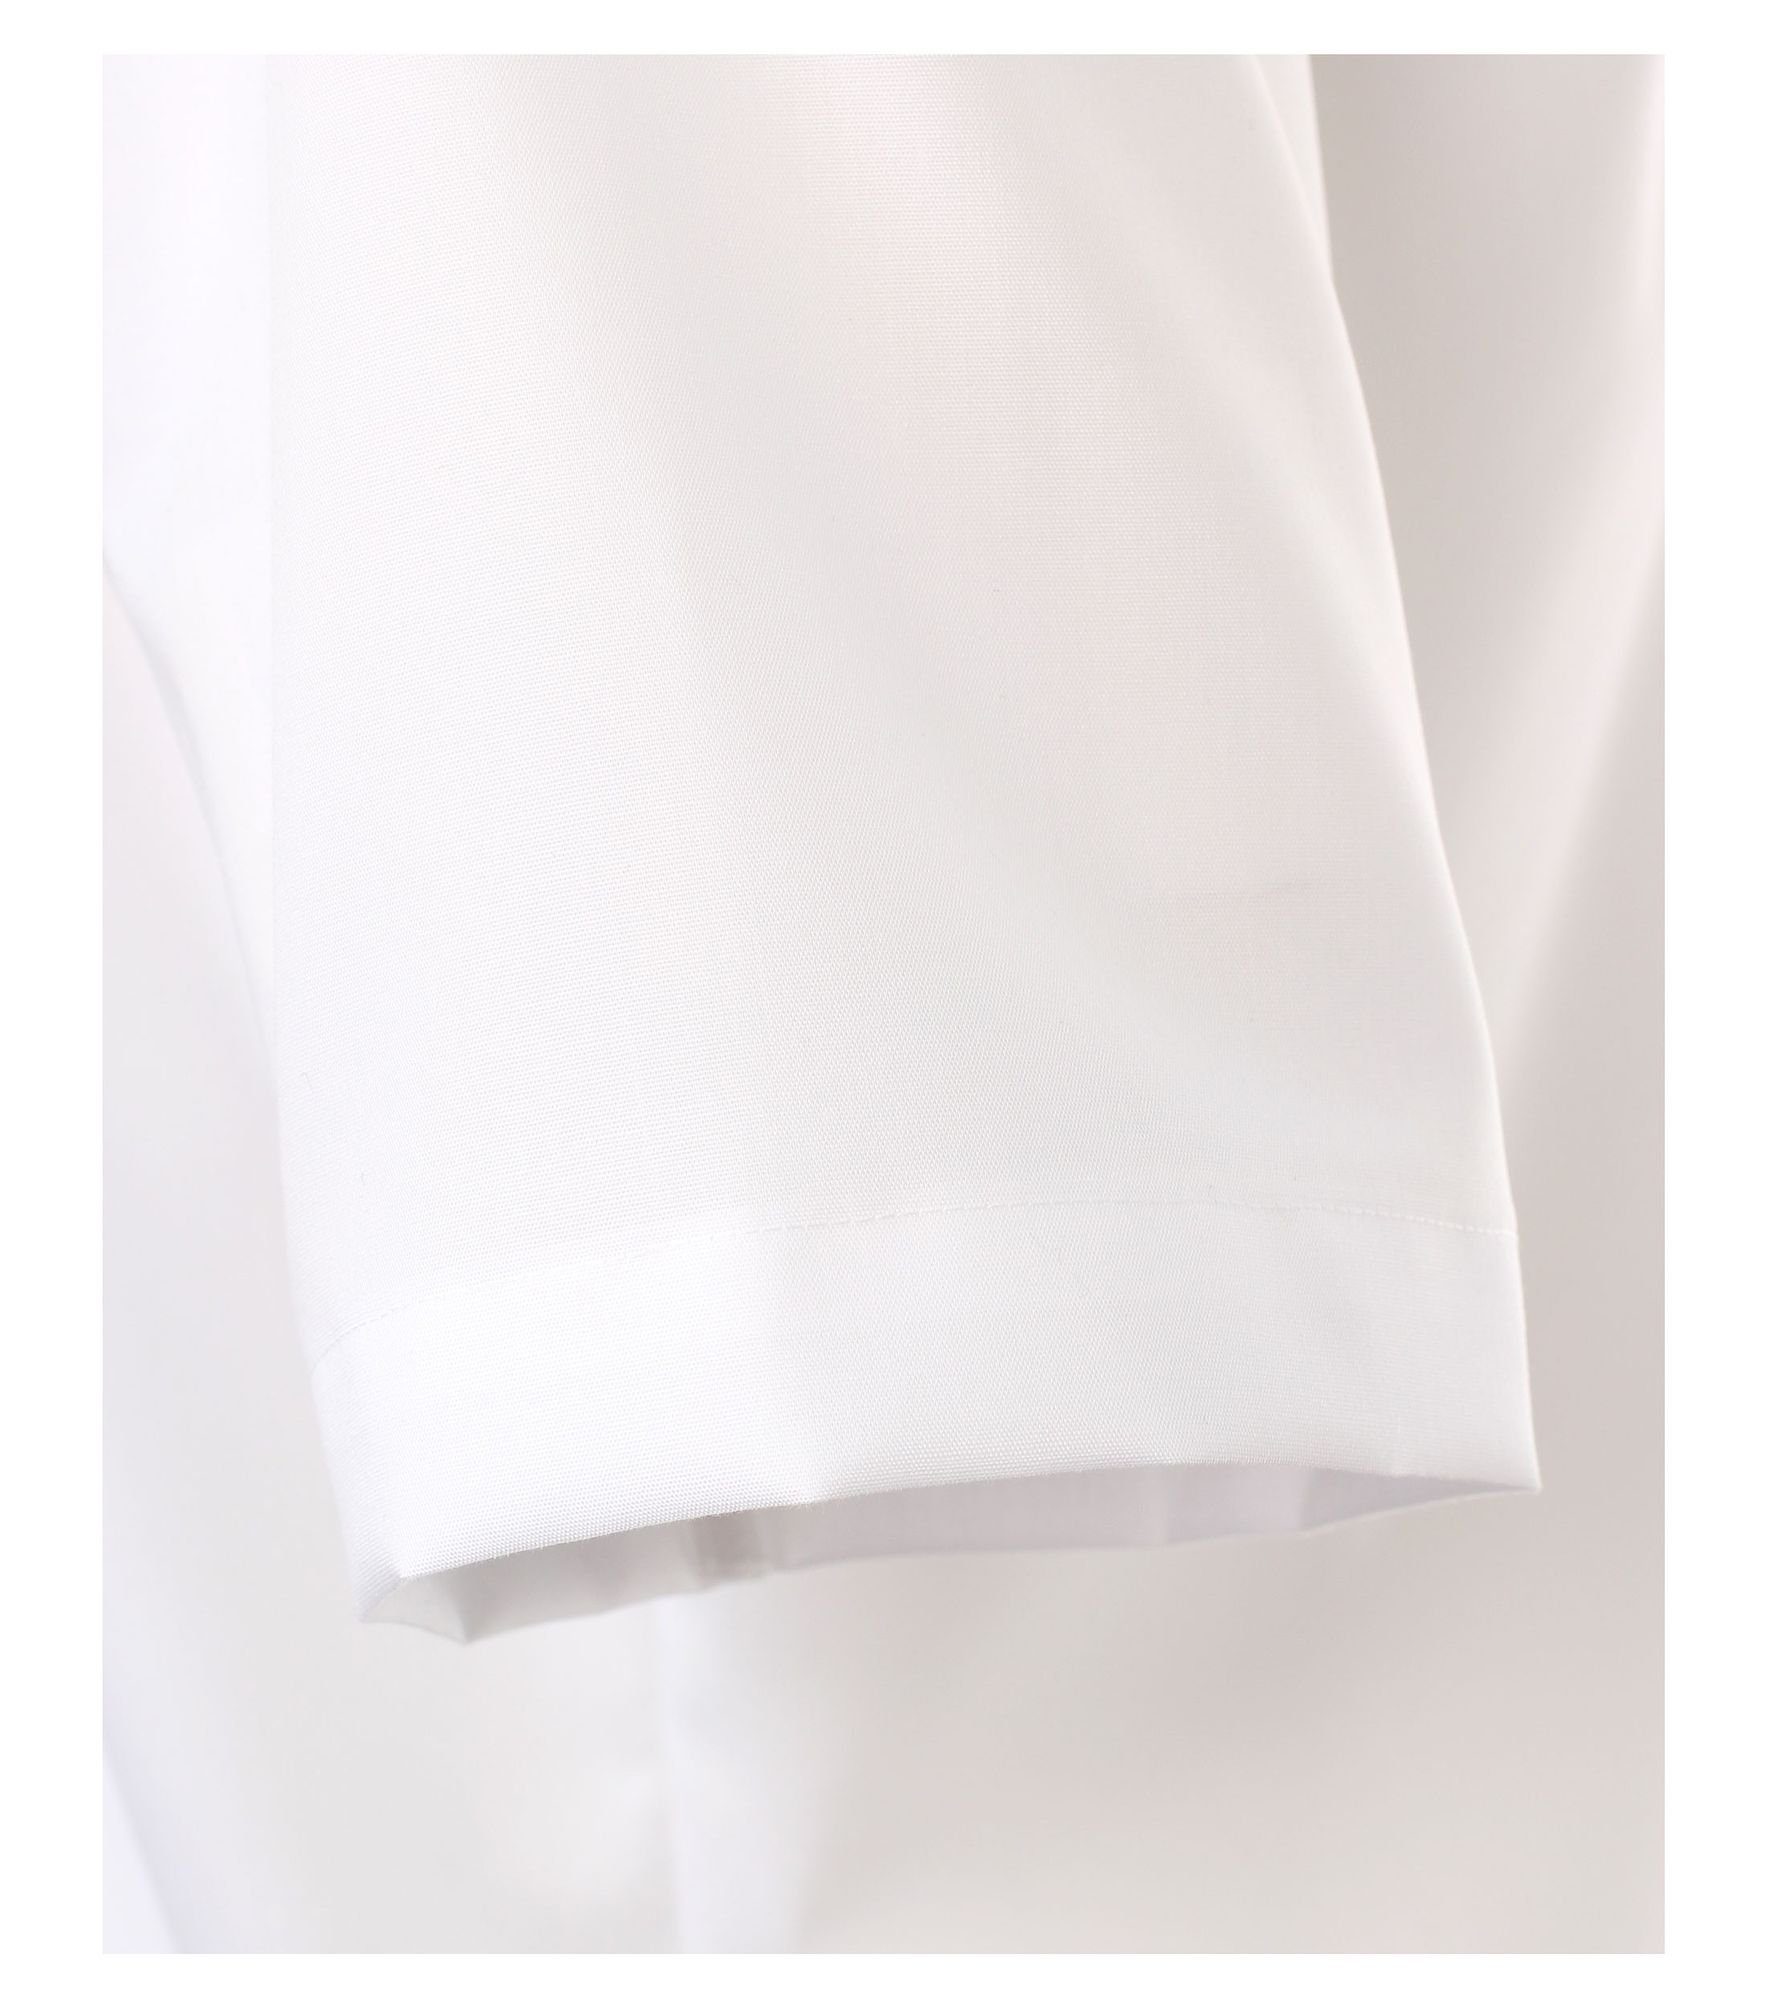 CASAMODA Kurzarmhemd Einfarbig 1/2 NOS Fit Comfort Weiß(0)